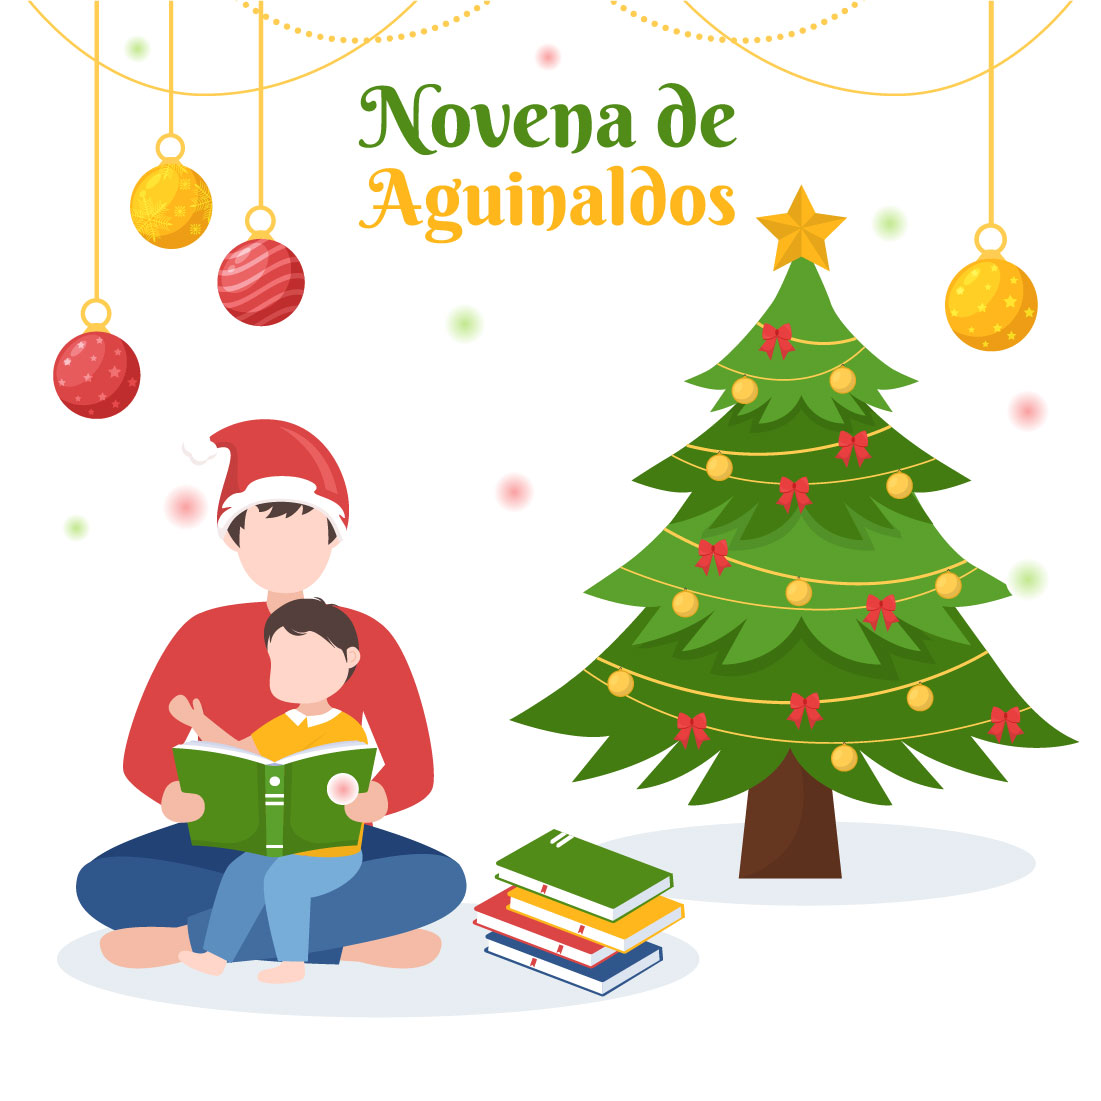 Holiday Novena De Aguinaldos Illustration cover image.